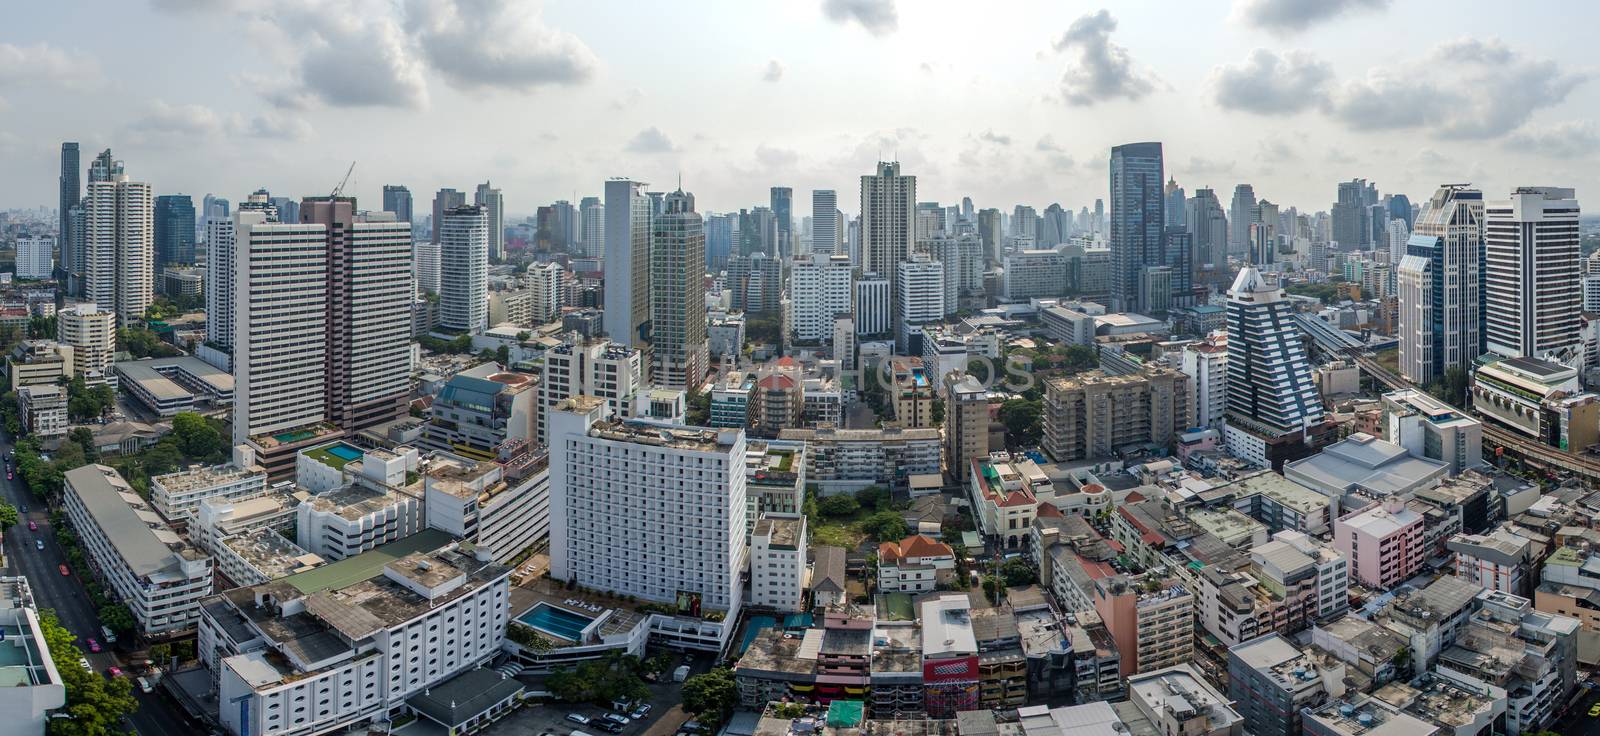 Bangkok City Panorama, Nana and Sukhumvit Road Aerial Photograph by praethip